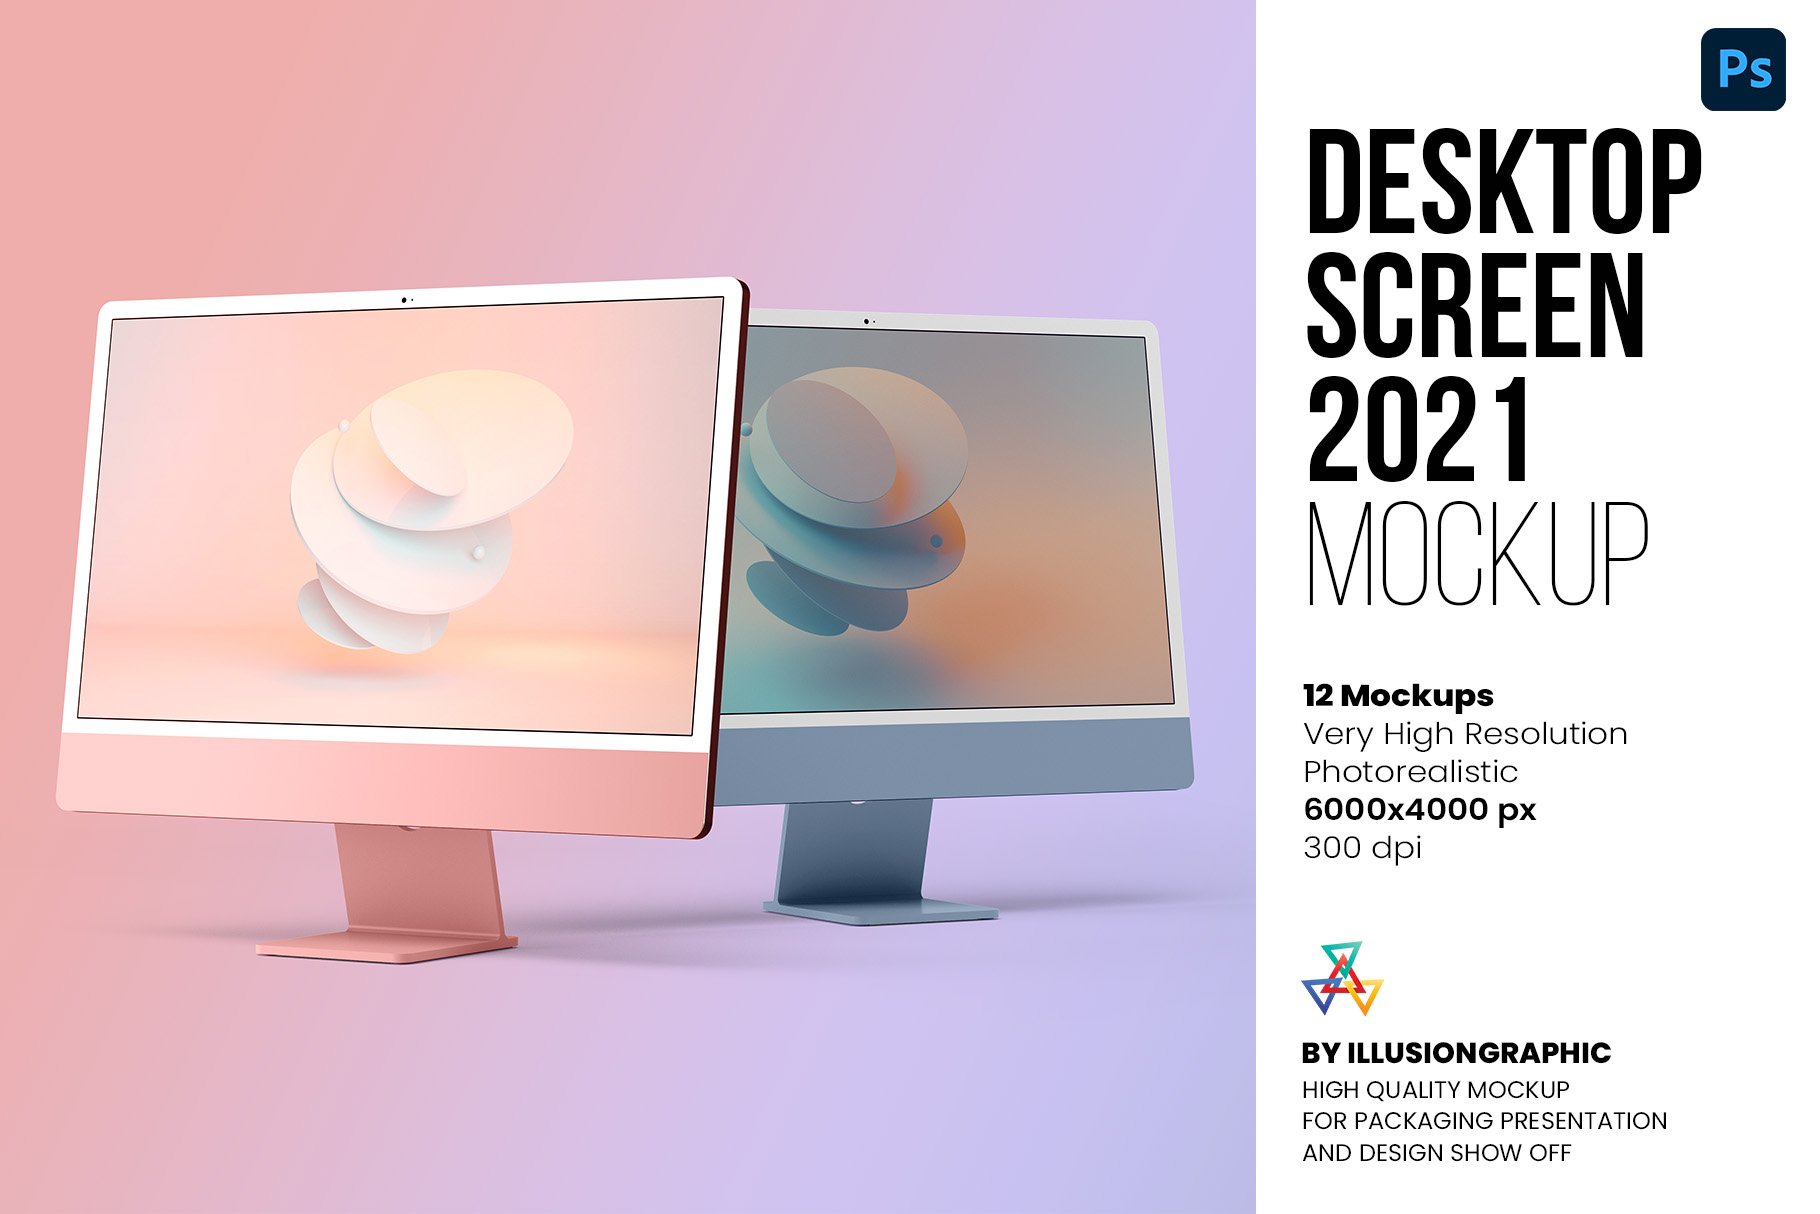 Desktop Screen Mockup 2021 12 views cover image.